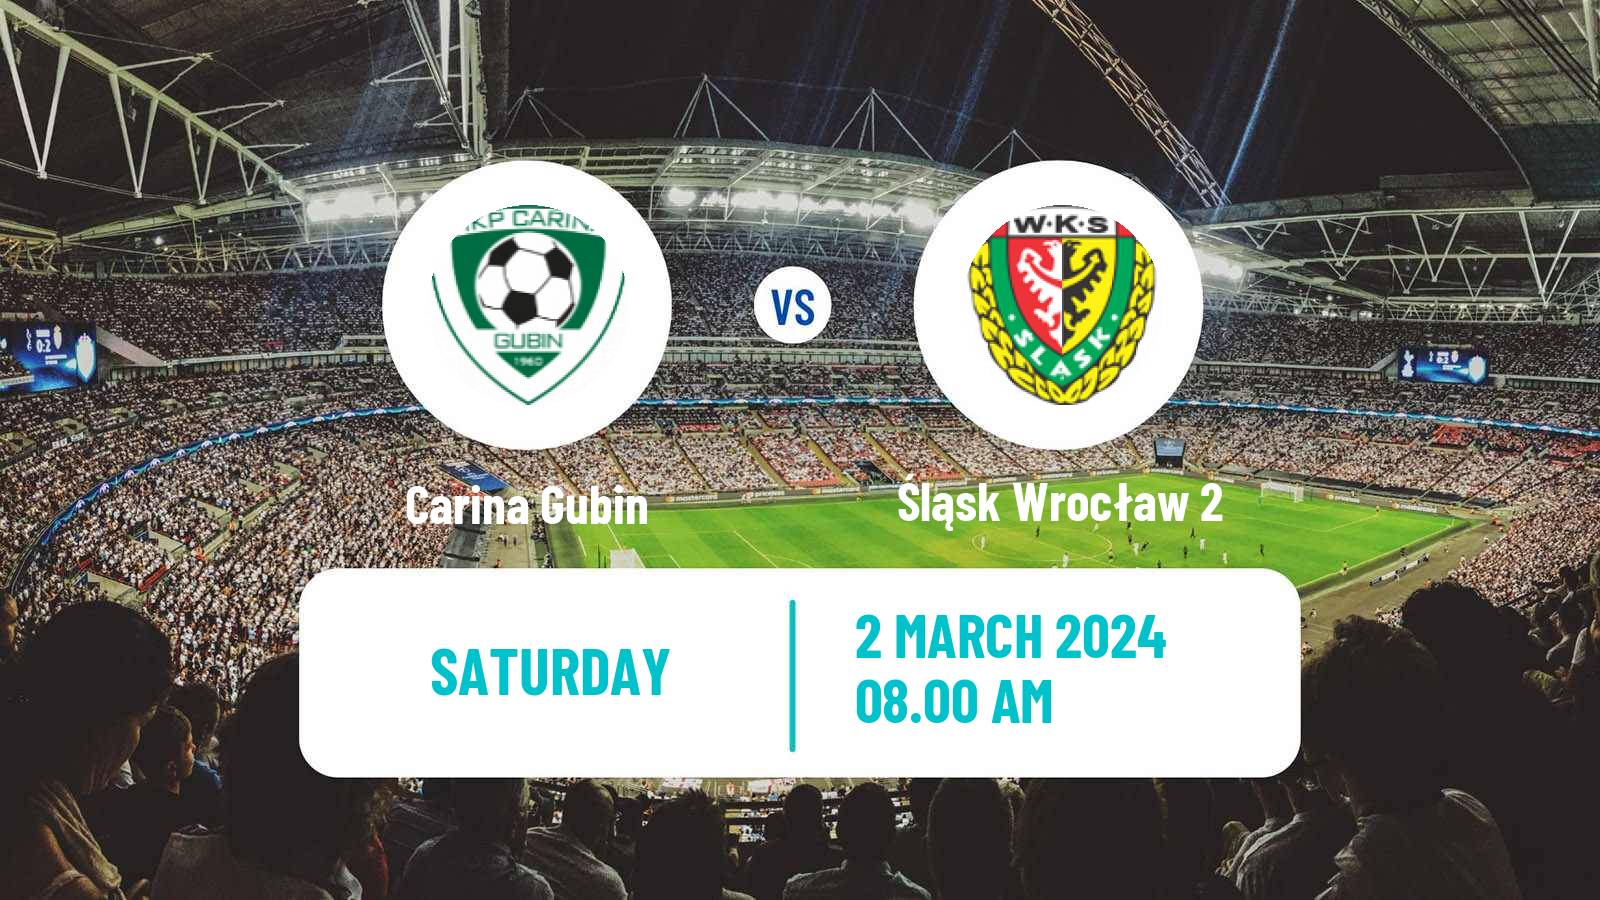 Soccer Polish Division 3 - Group III Carina Gubin - Śląsk Wrocław 2